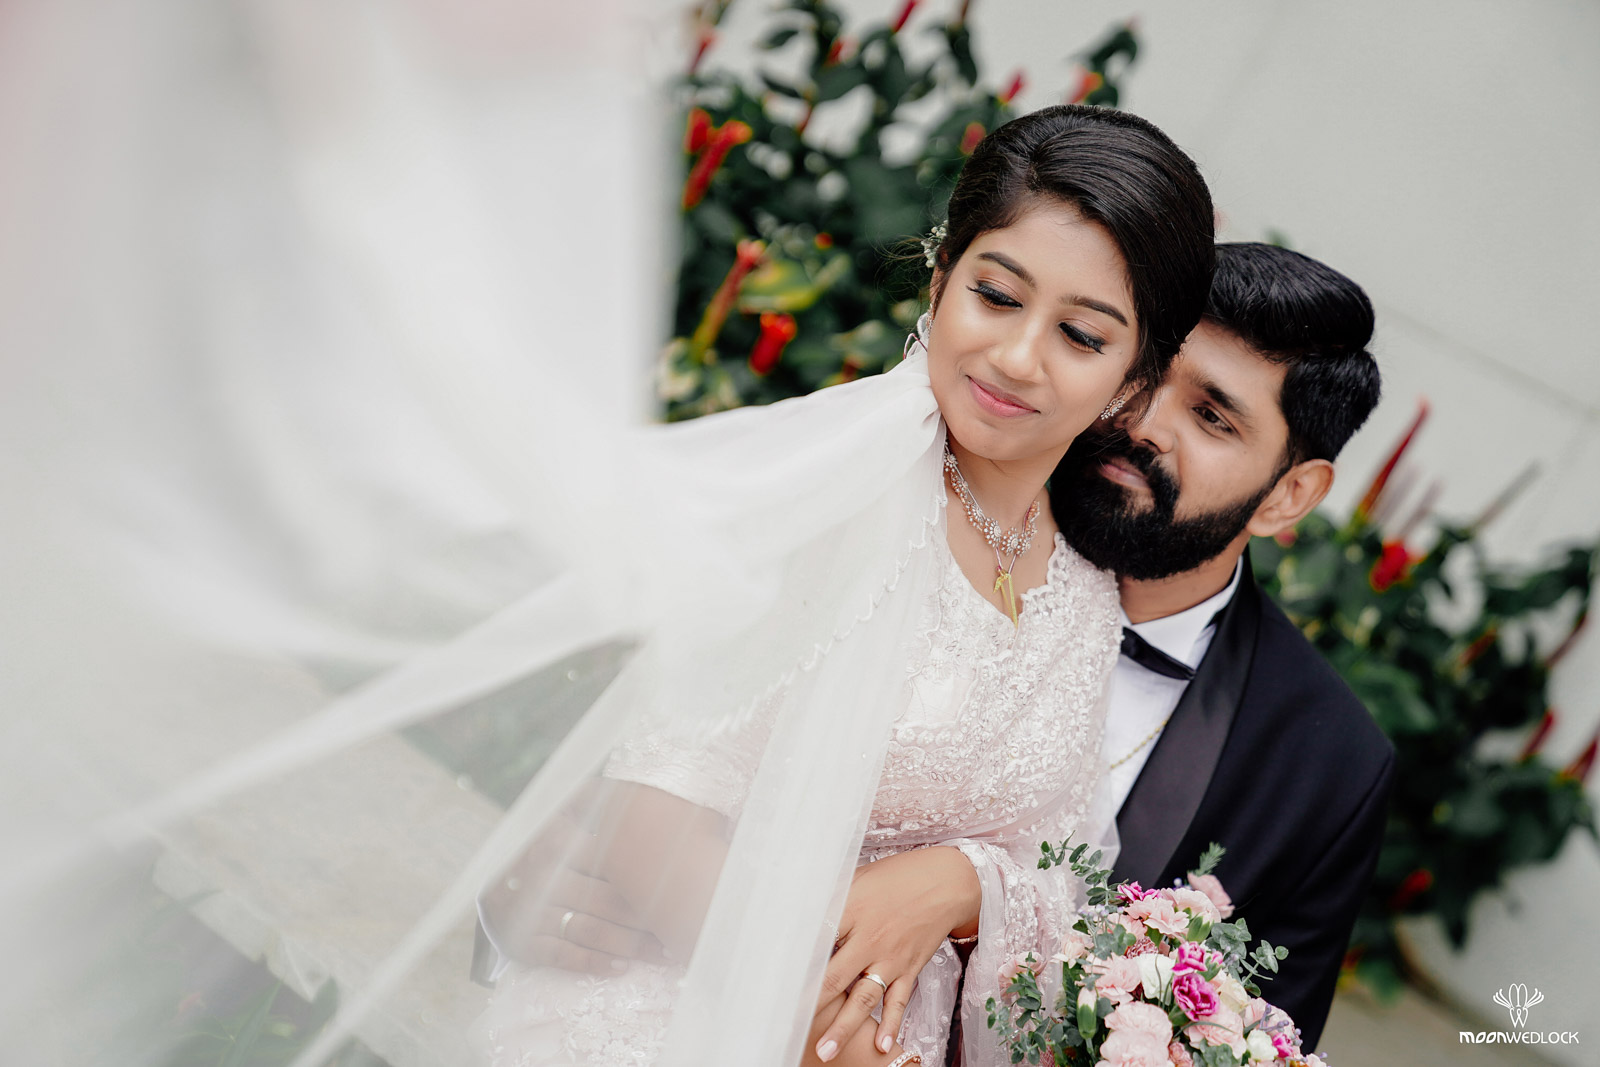 bangalore-christian-wedding-photography-moonwedlock (15)